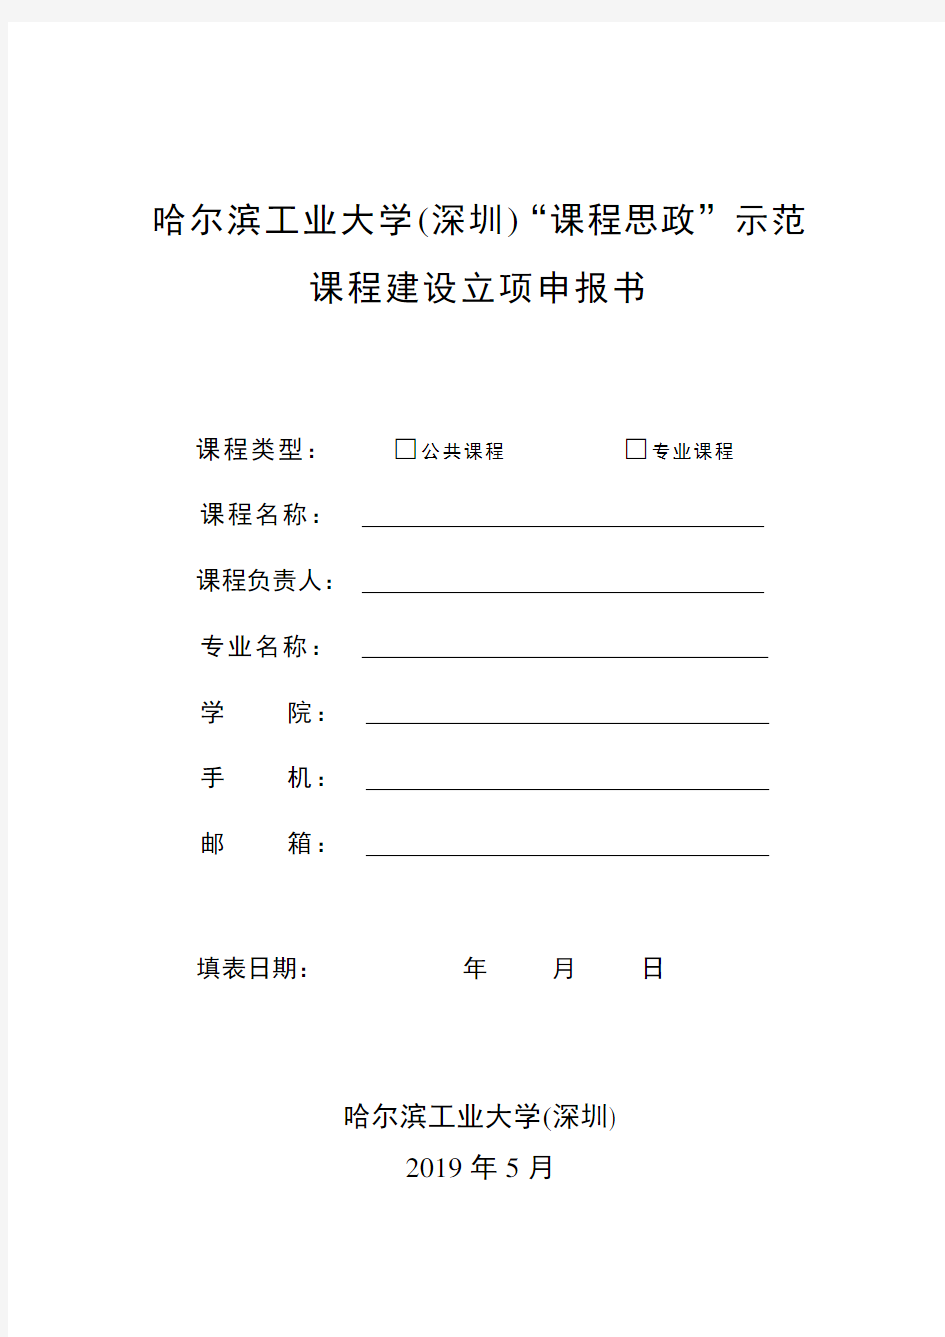 哈尔滨工业大学(深圳)课程思政示范课程建设立项申报书